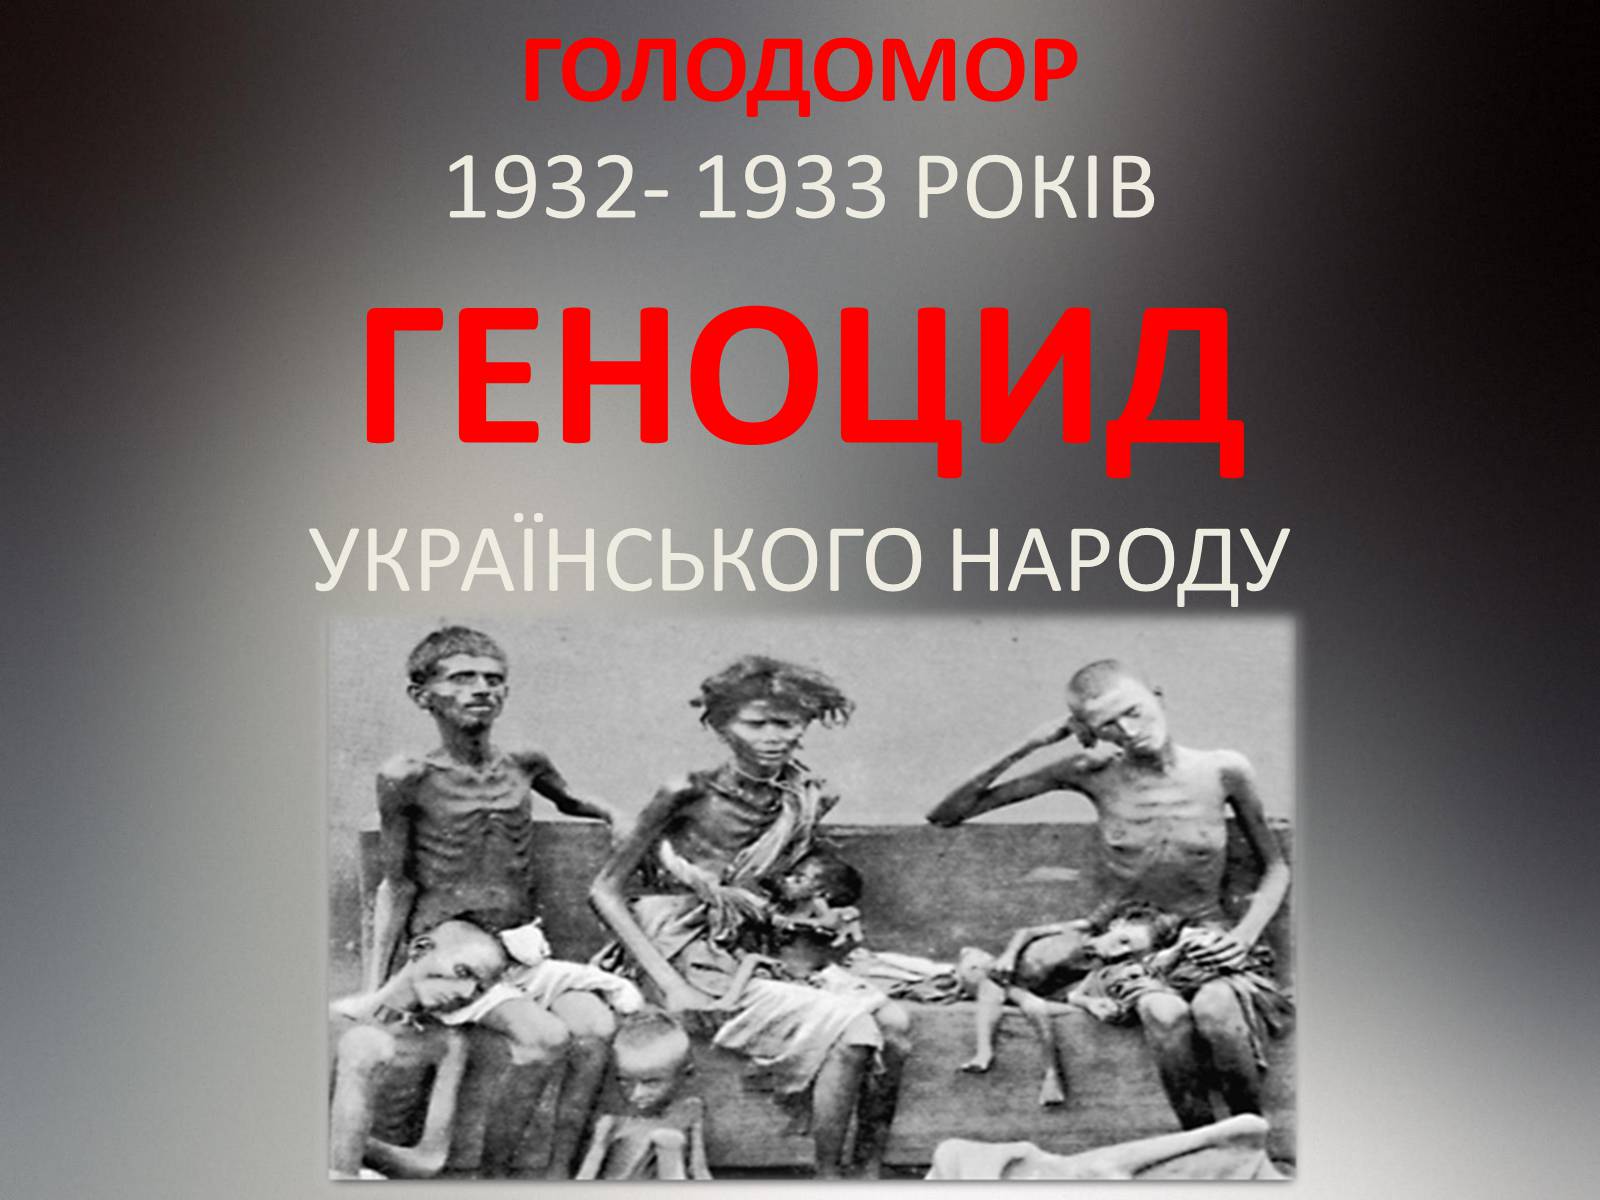 Массовый голод 1932 1933. Голодомор в Украине 1932-1933. Жертвы Голодомора 1932-1933. 1932 Год Голодомора на Украине.